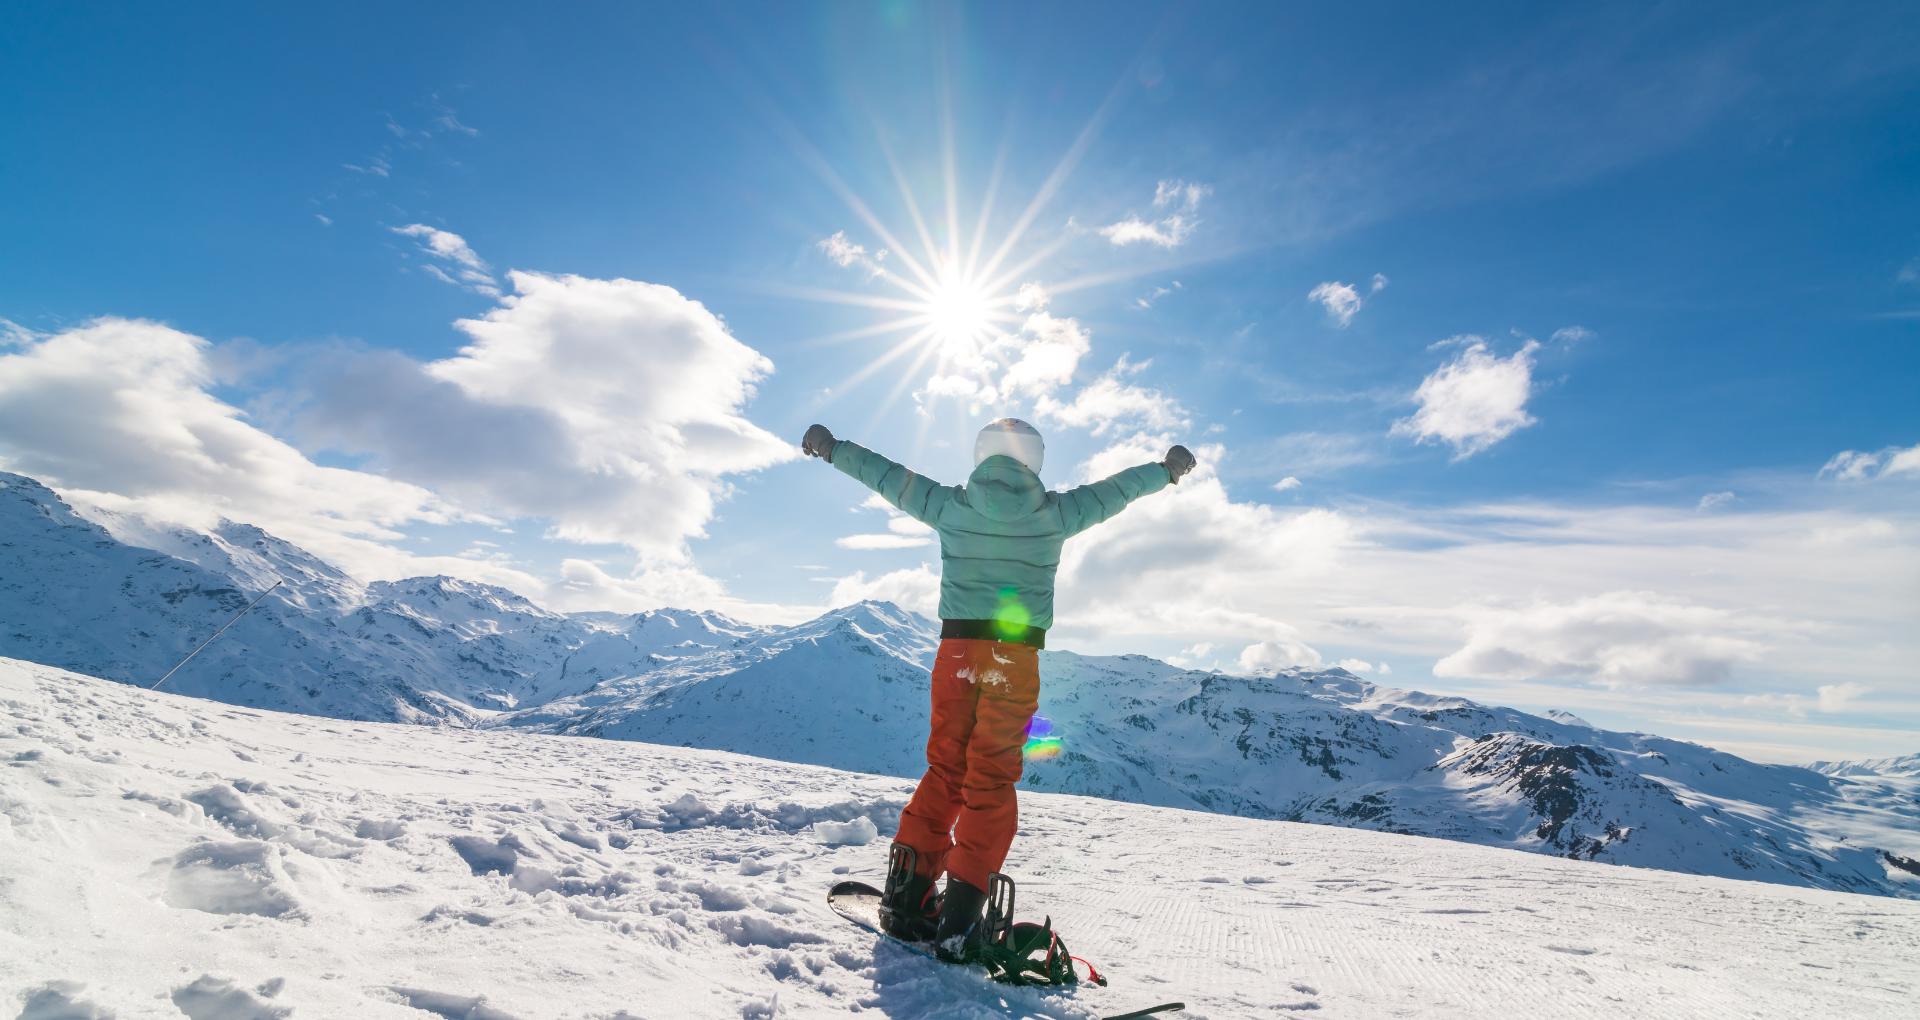 Un skieur de dos admirant la vue sur les montagnes enneigées